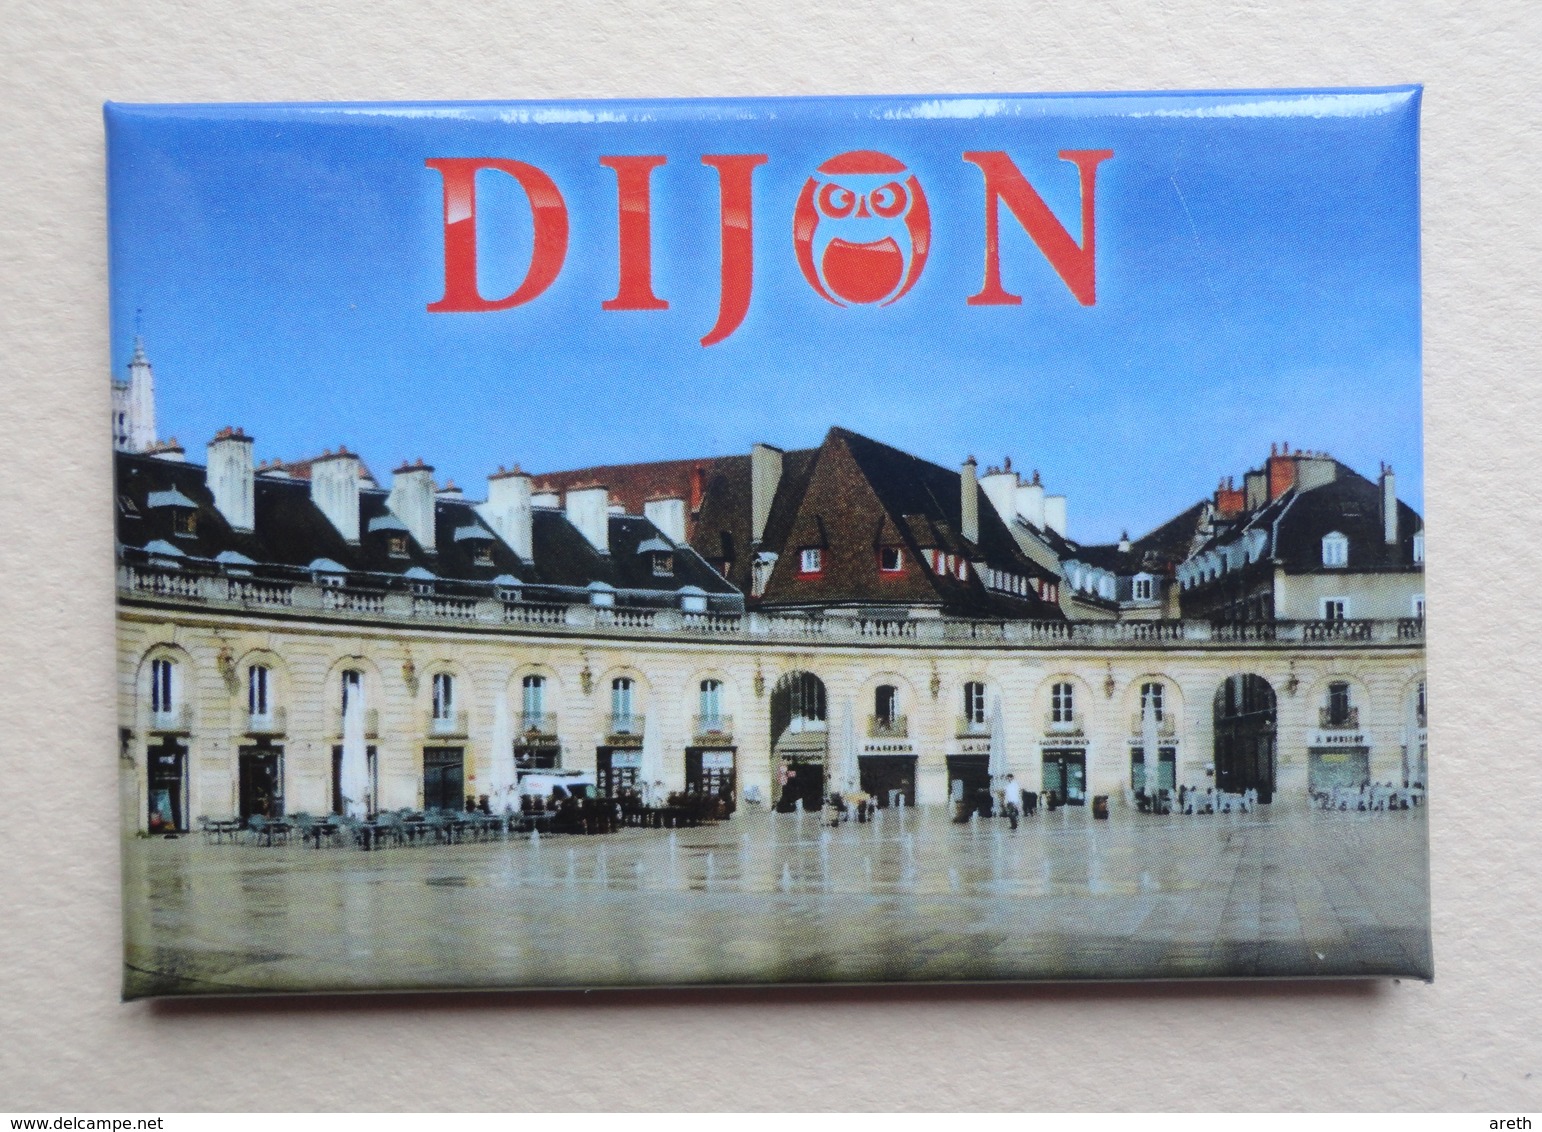 2 Magnets DIJON - Chouette,Le Bareuzai, Palais Des Ducs.. - Tourism